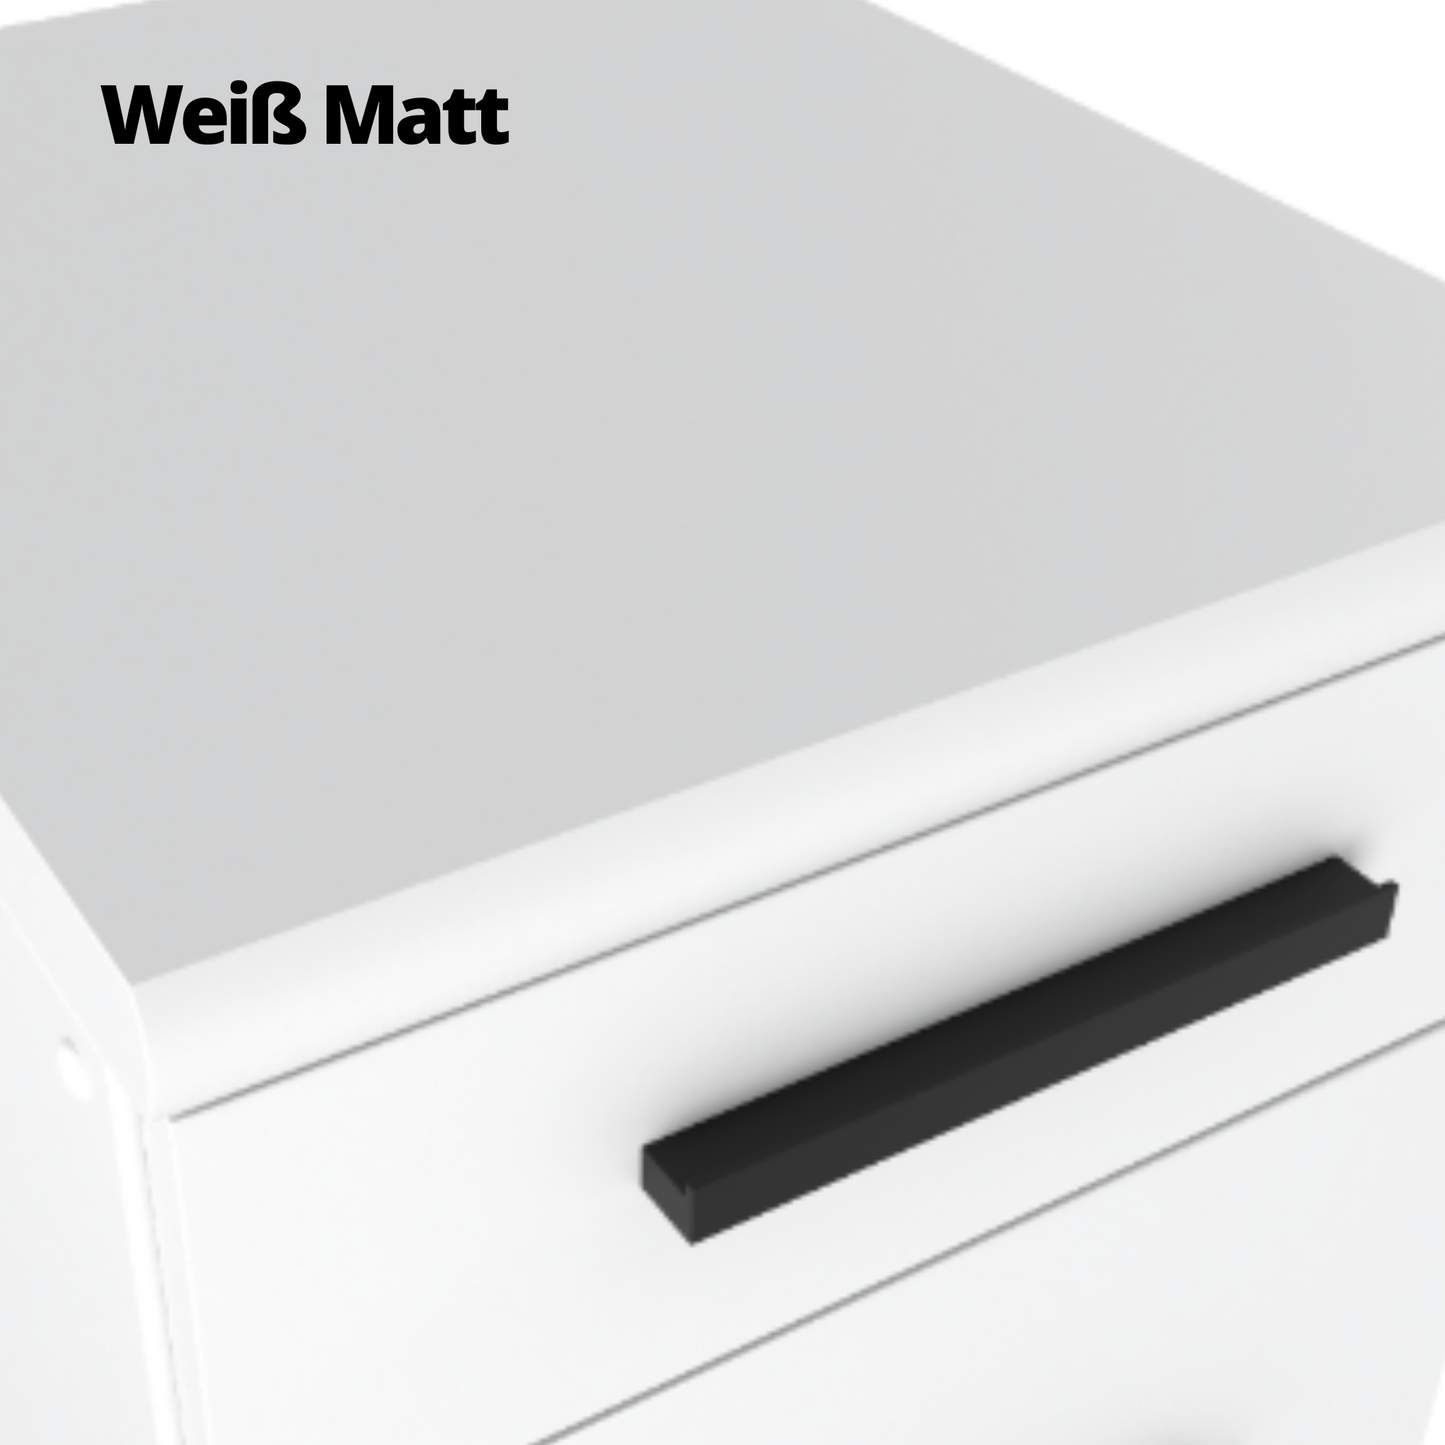 RENO - Küchenblock - Weiß Matt / Beton mit Arbeitsplatte - 8 Schränke - 260 cm